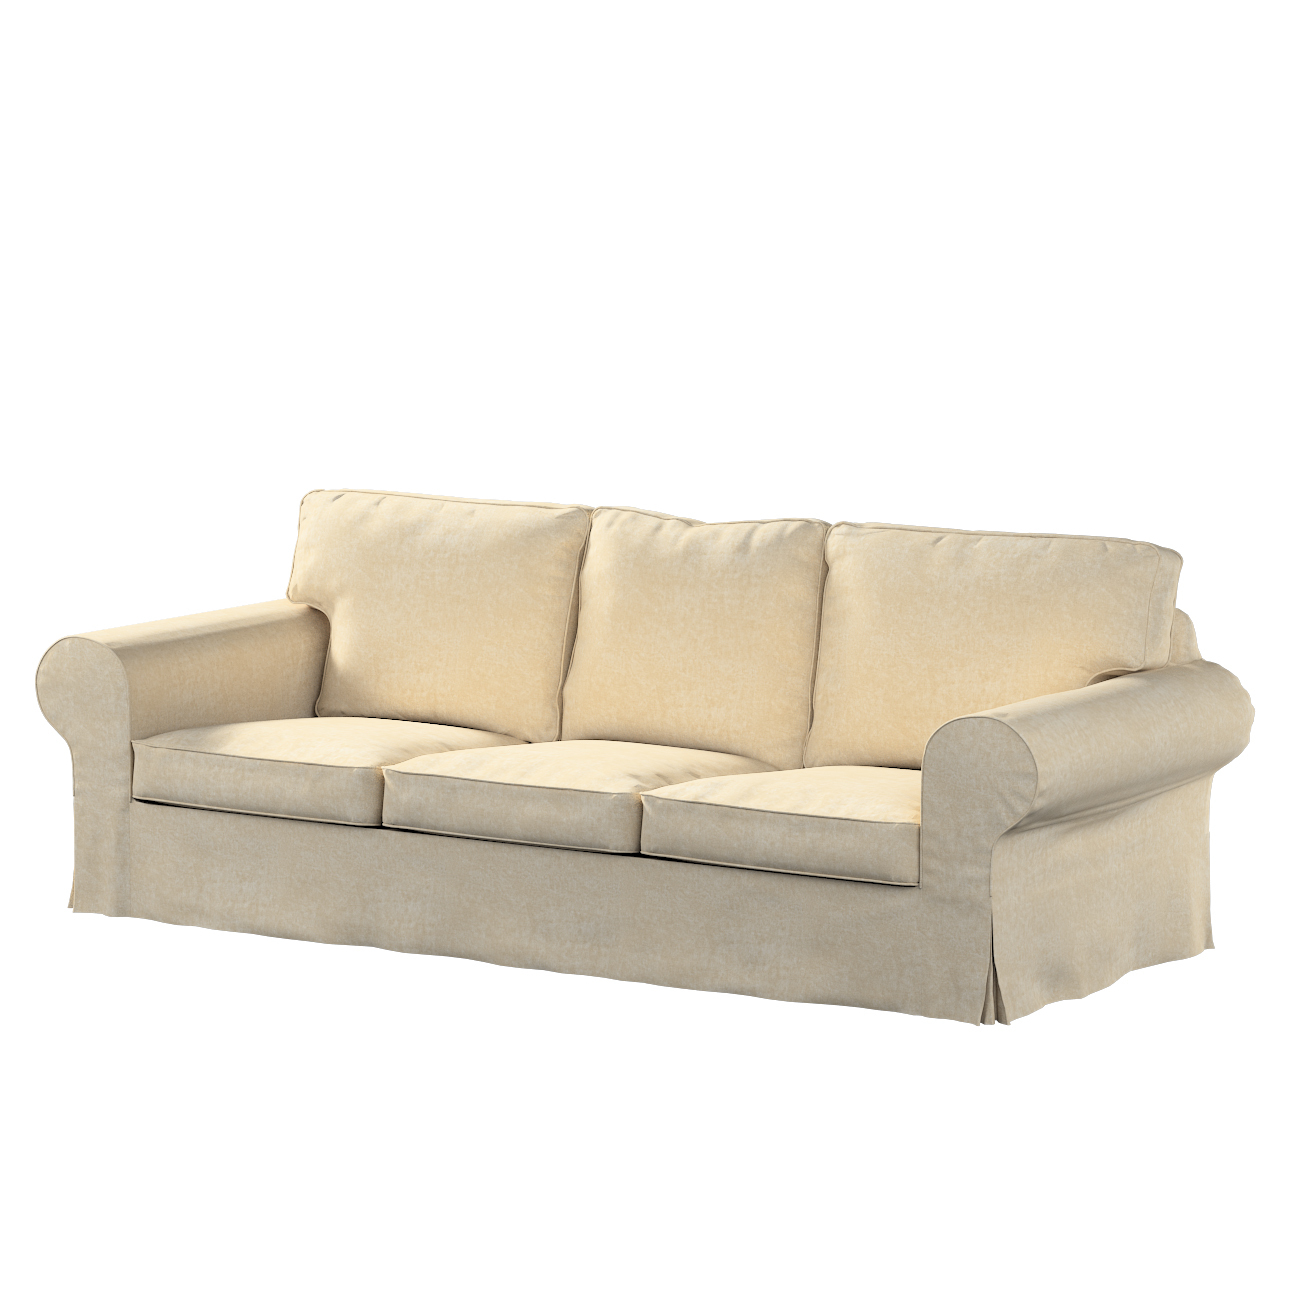 Bezug für Ektorp 3-Sitzer Sofa nicht ausklappbar, grau-beige, Sofabezug für günstig online kaufen